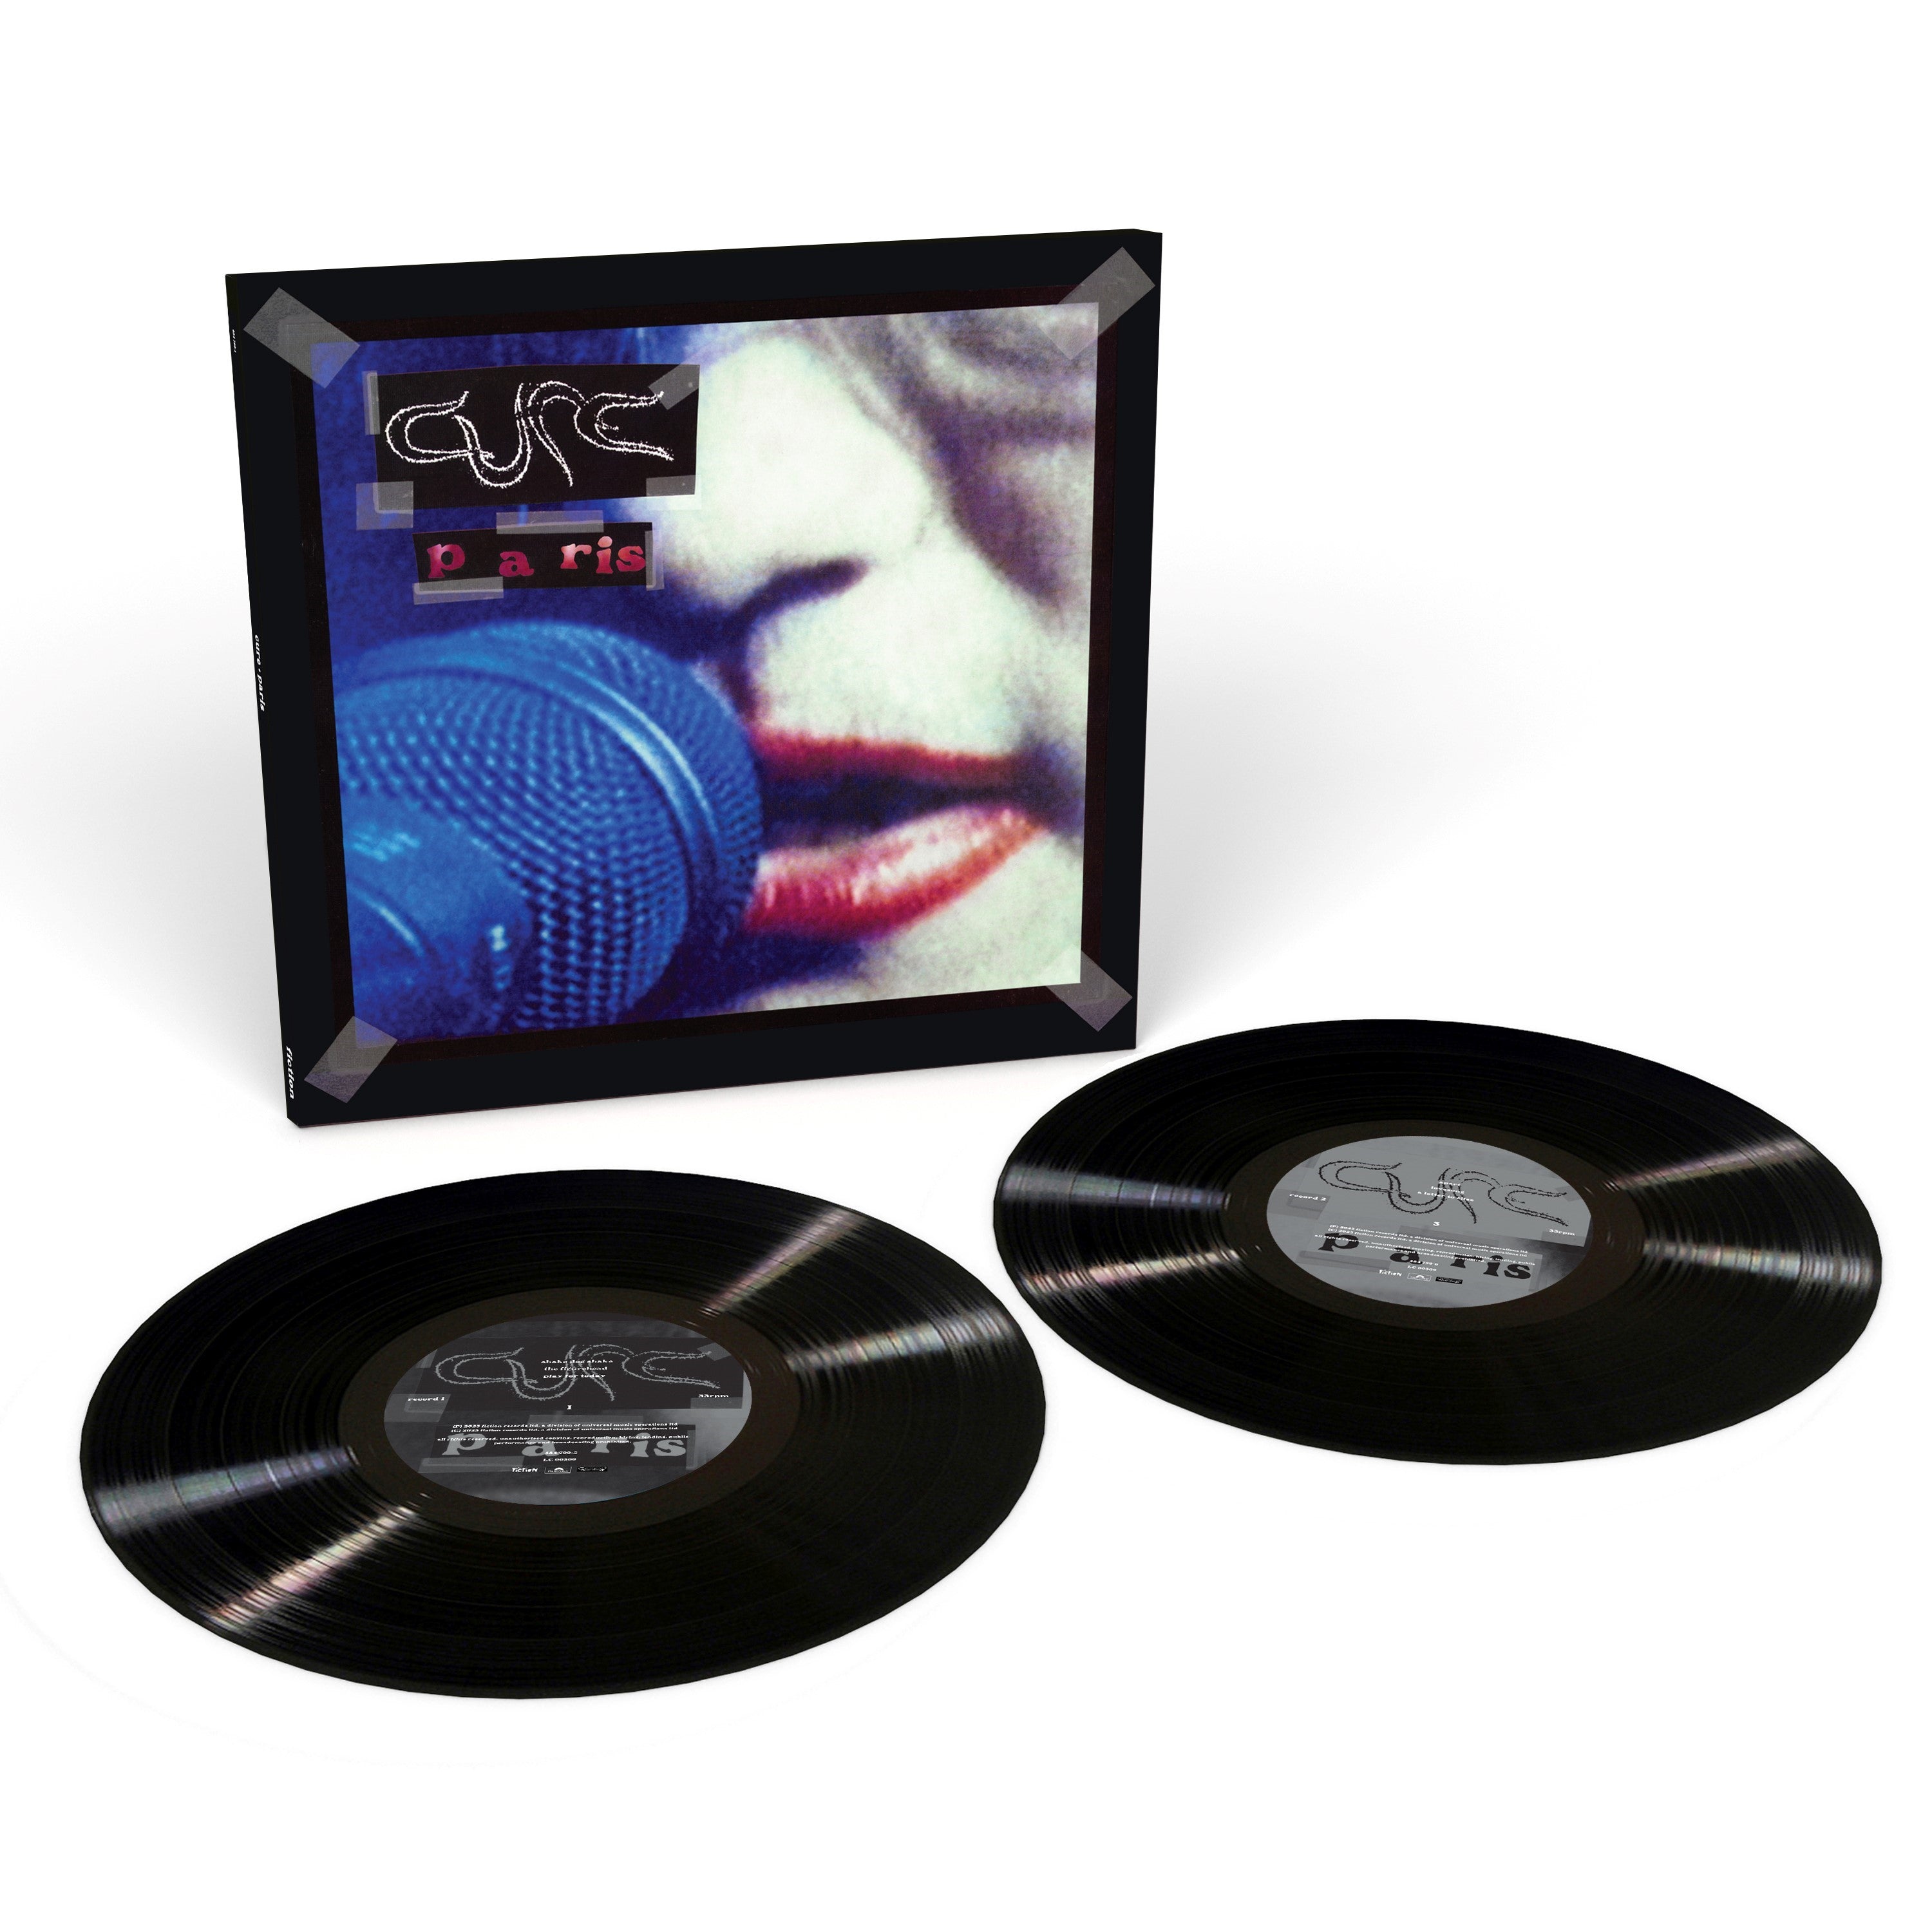 The Cure - Paris - Double Vinyle